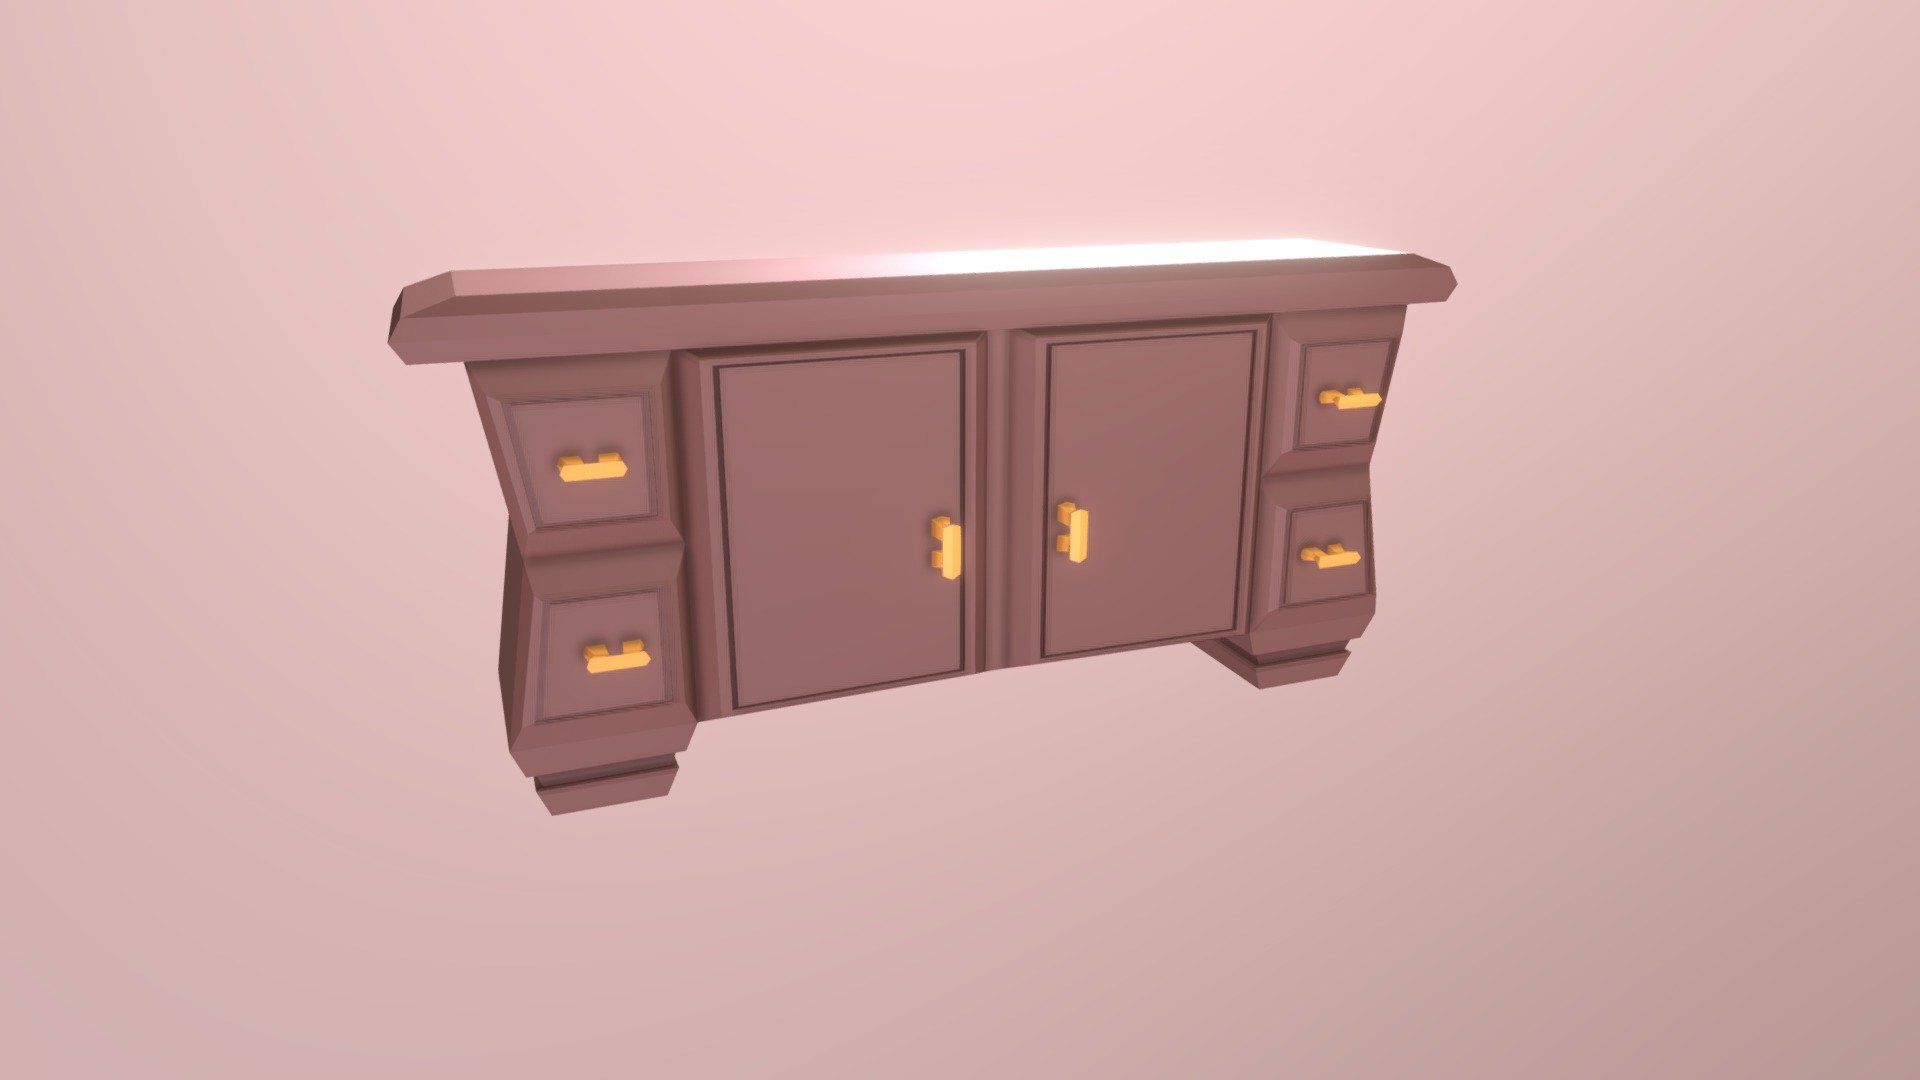 Modular encimera - lowpoly worktop furniture